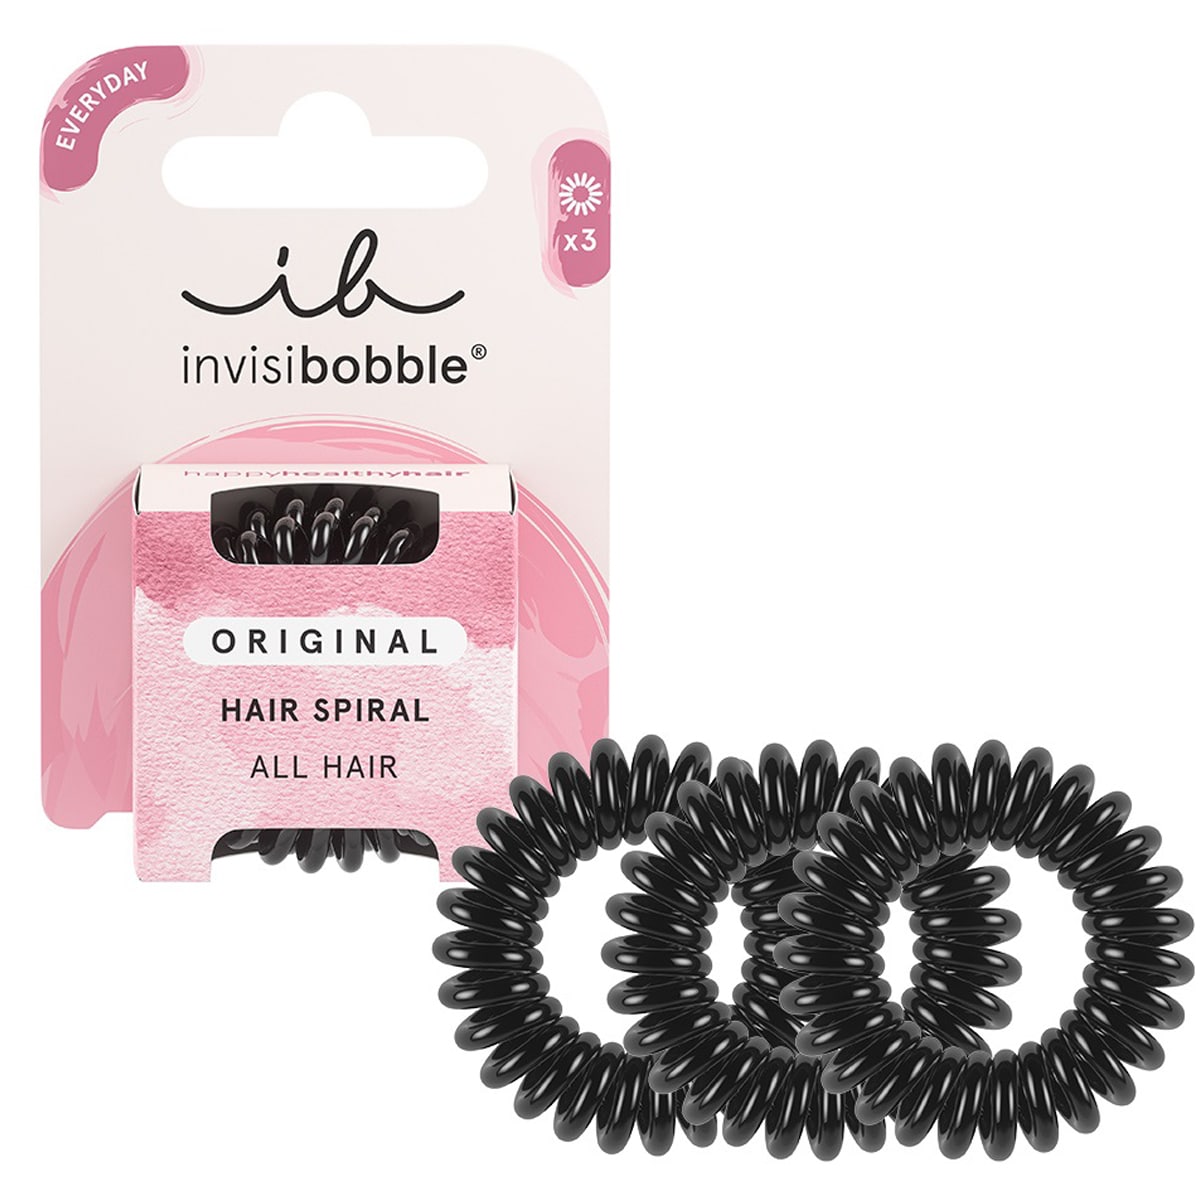 Invisibobble Резинка-браслет для волос True Black (Invisibobble, Original) invisibobble original бесследное кольцо для волос кристально чистое 3 шт в упаковке